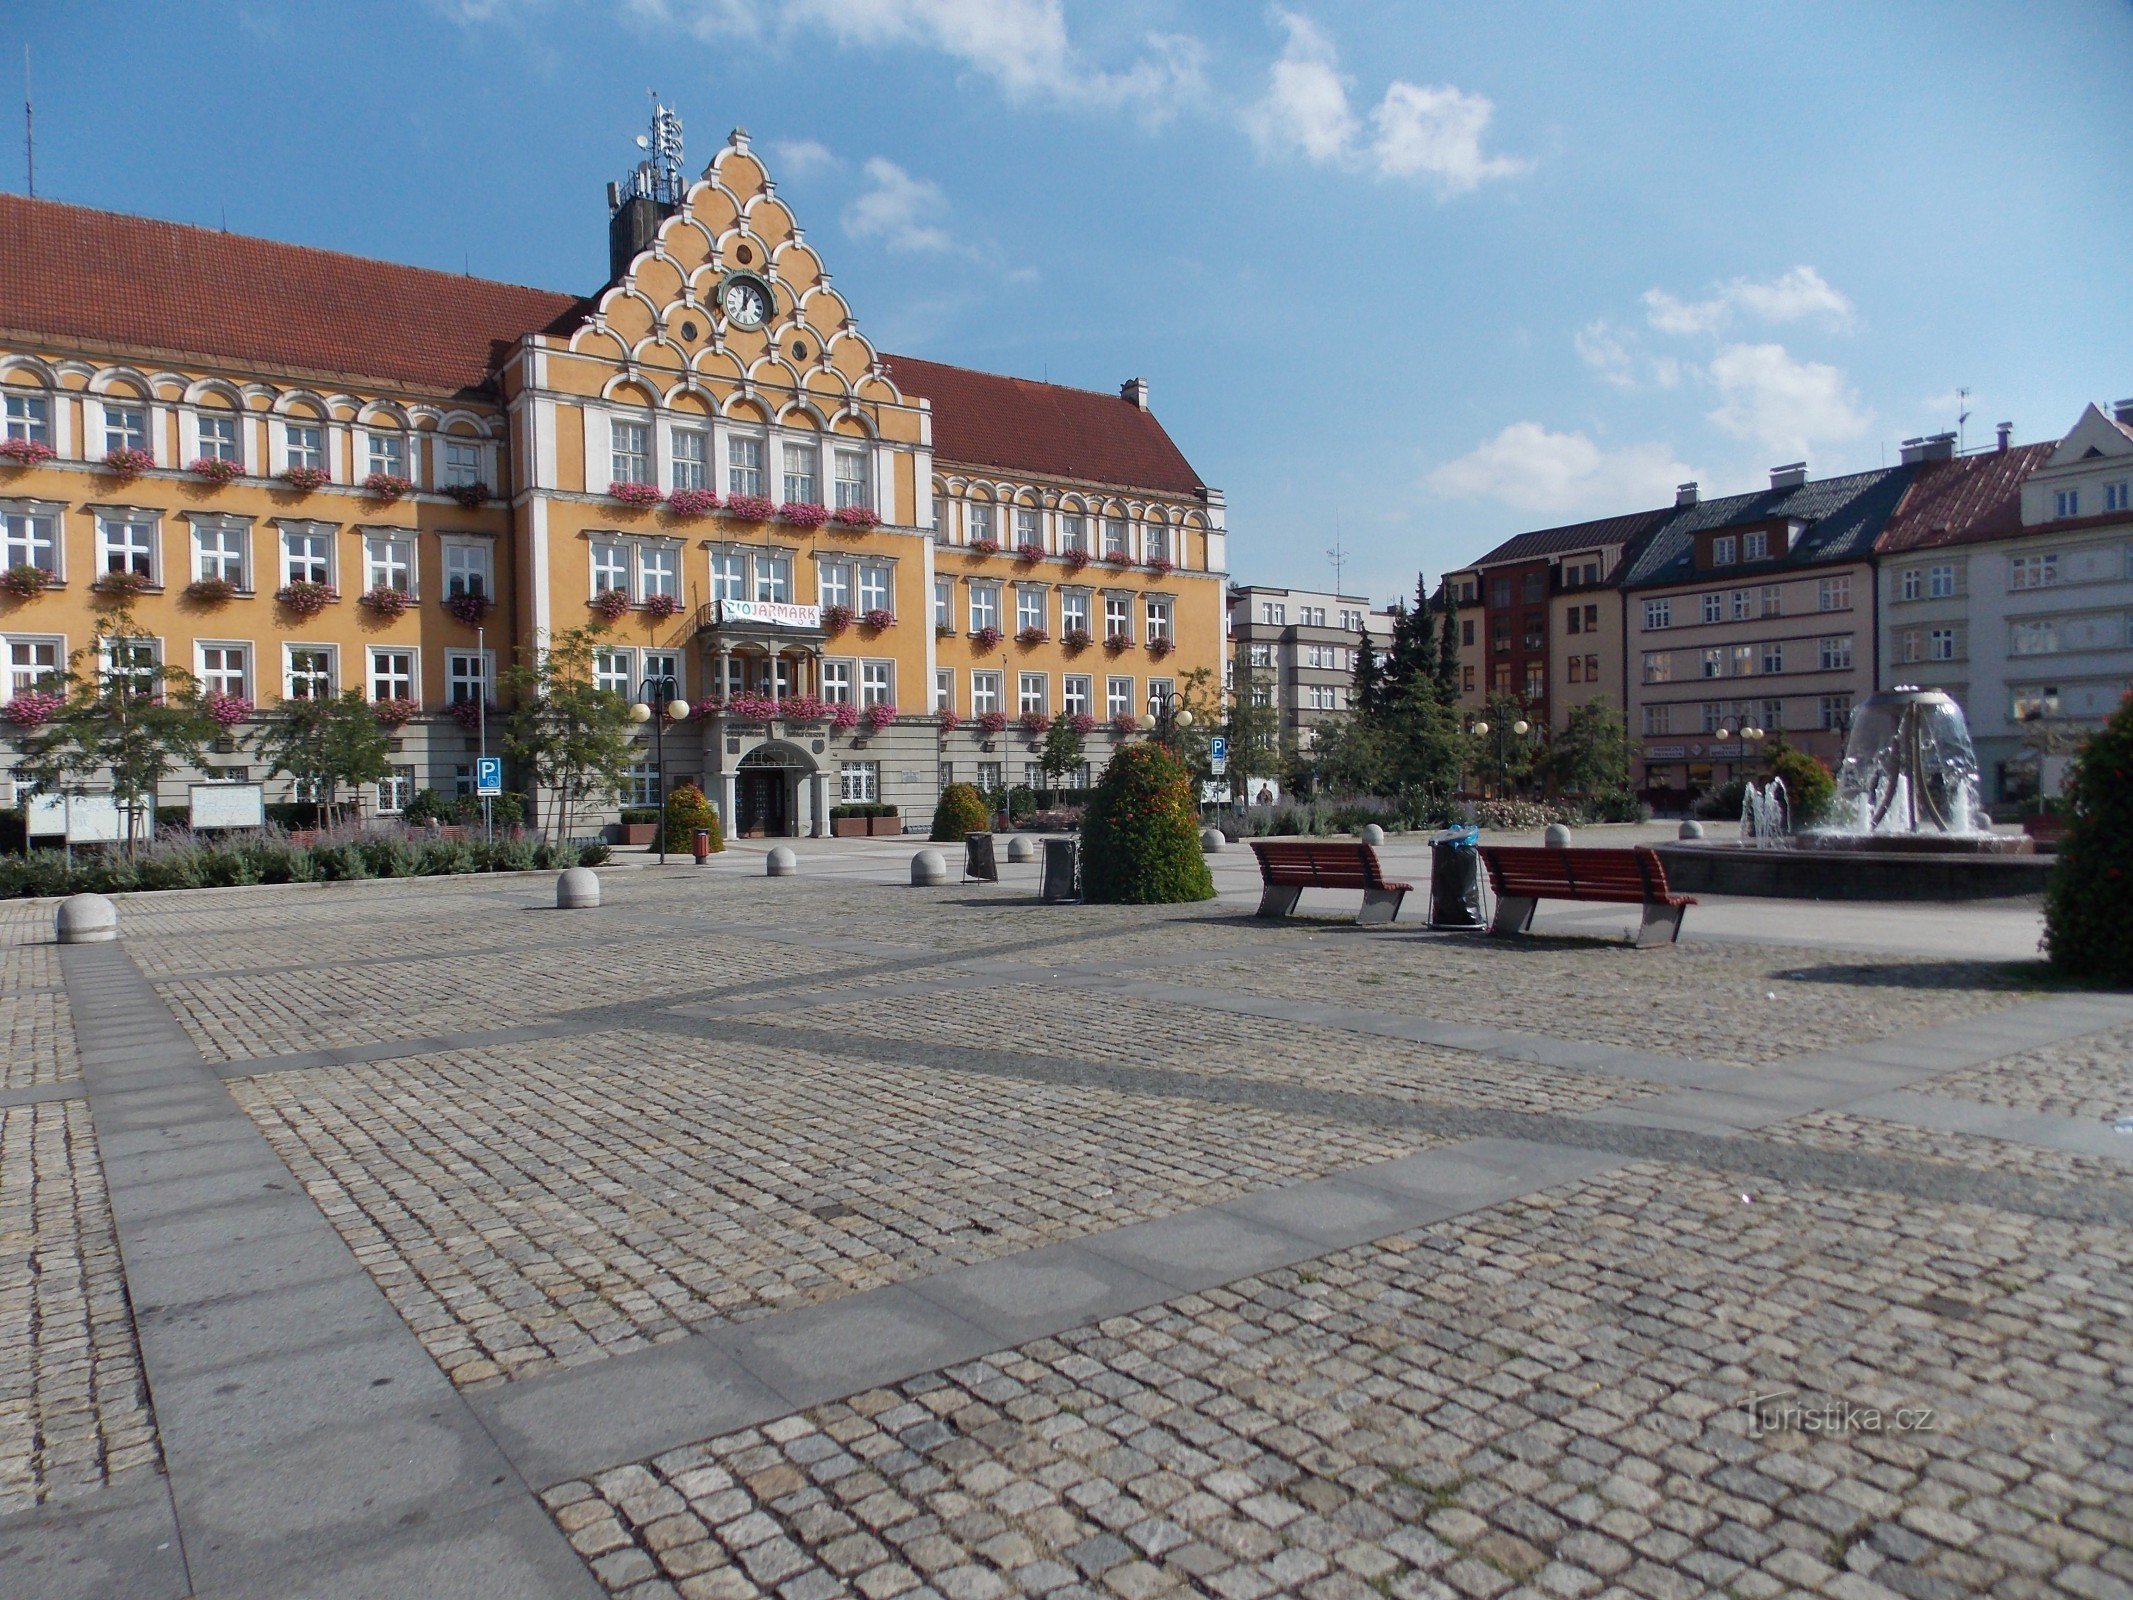 Die Dominante des Těšín-Platzes ist das Rathausgebäude